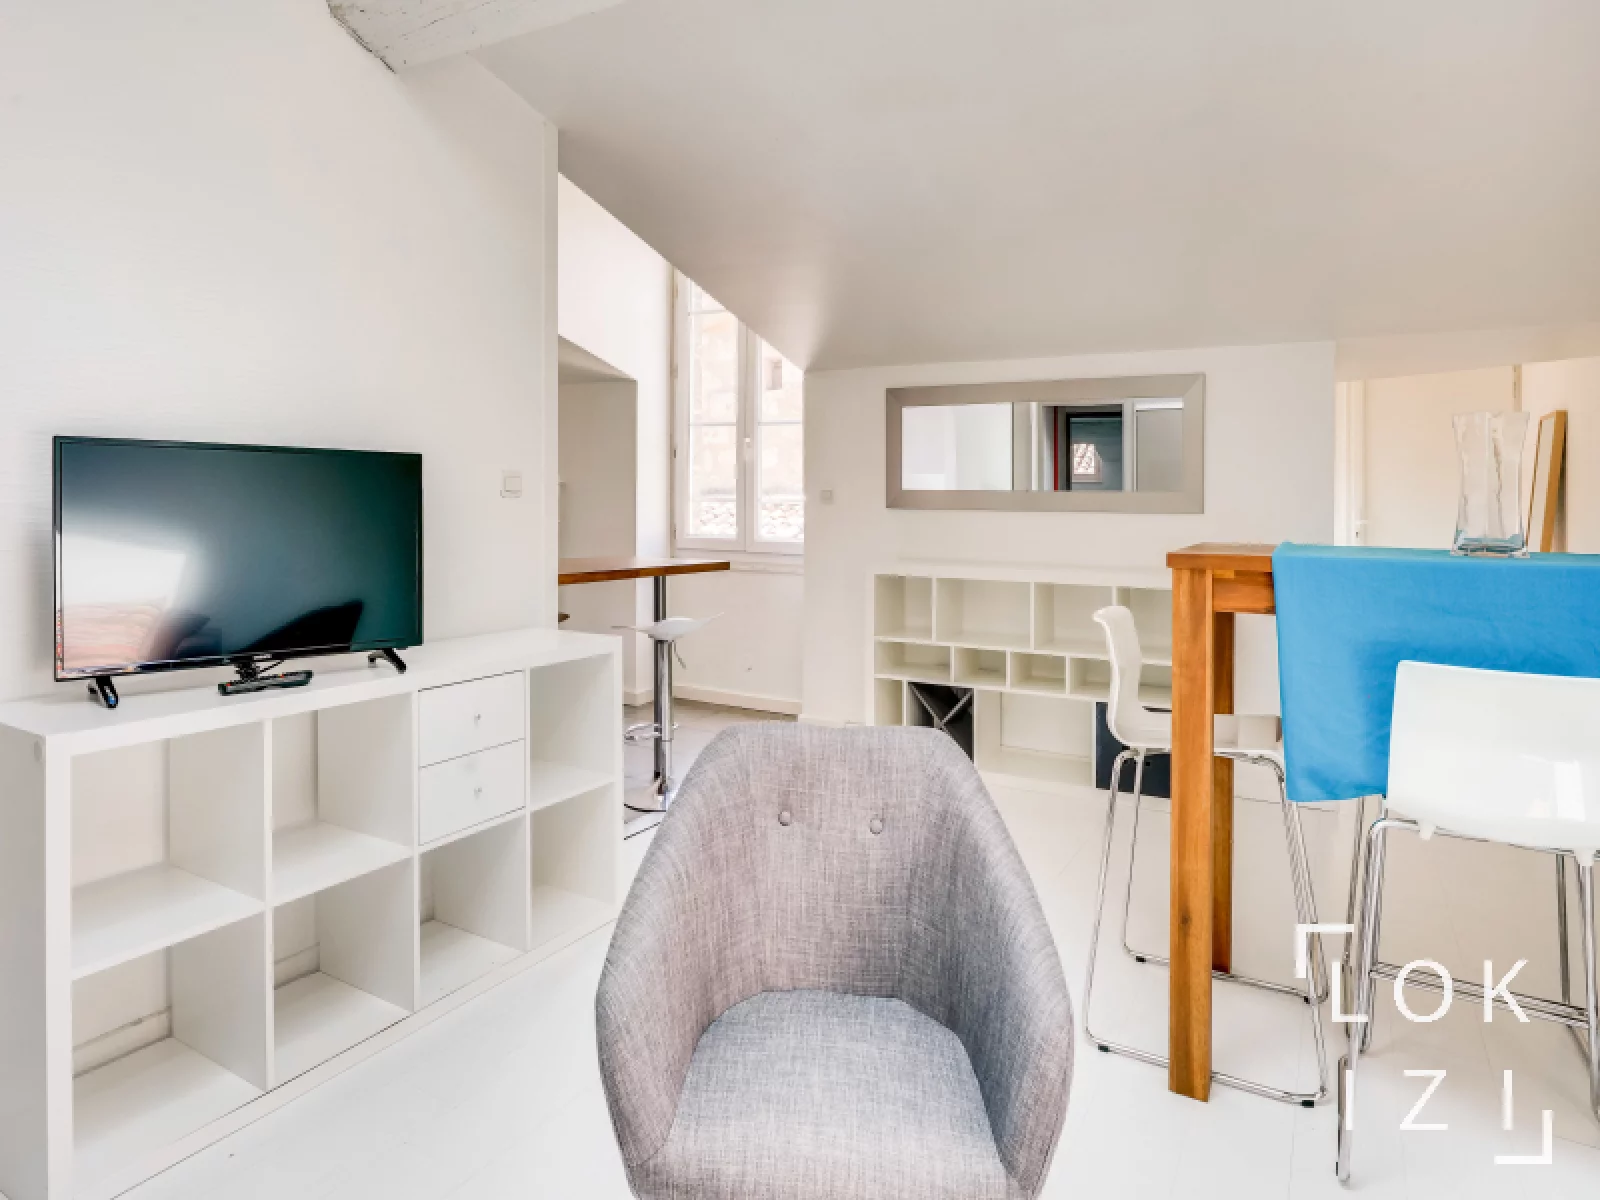 Location appartement T3 meublé de 60m² (Bordeaux centre)